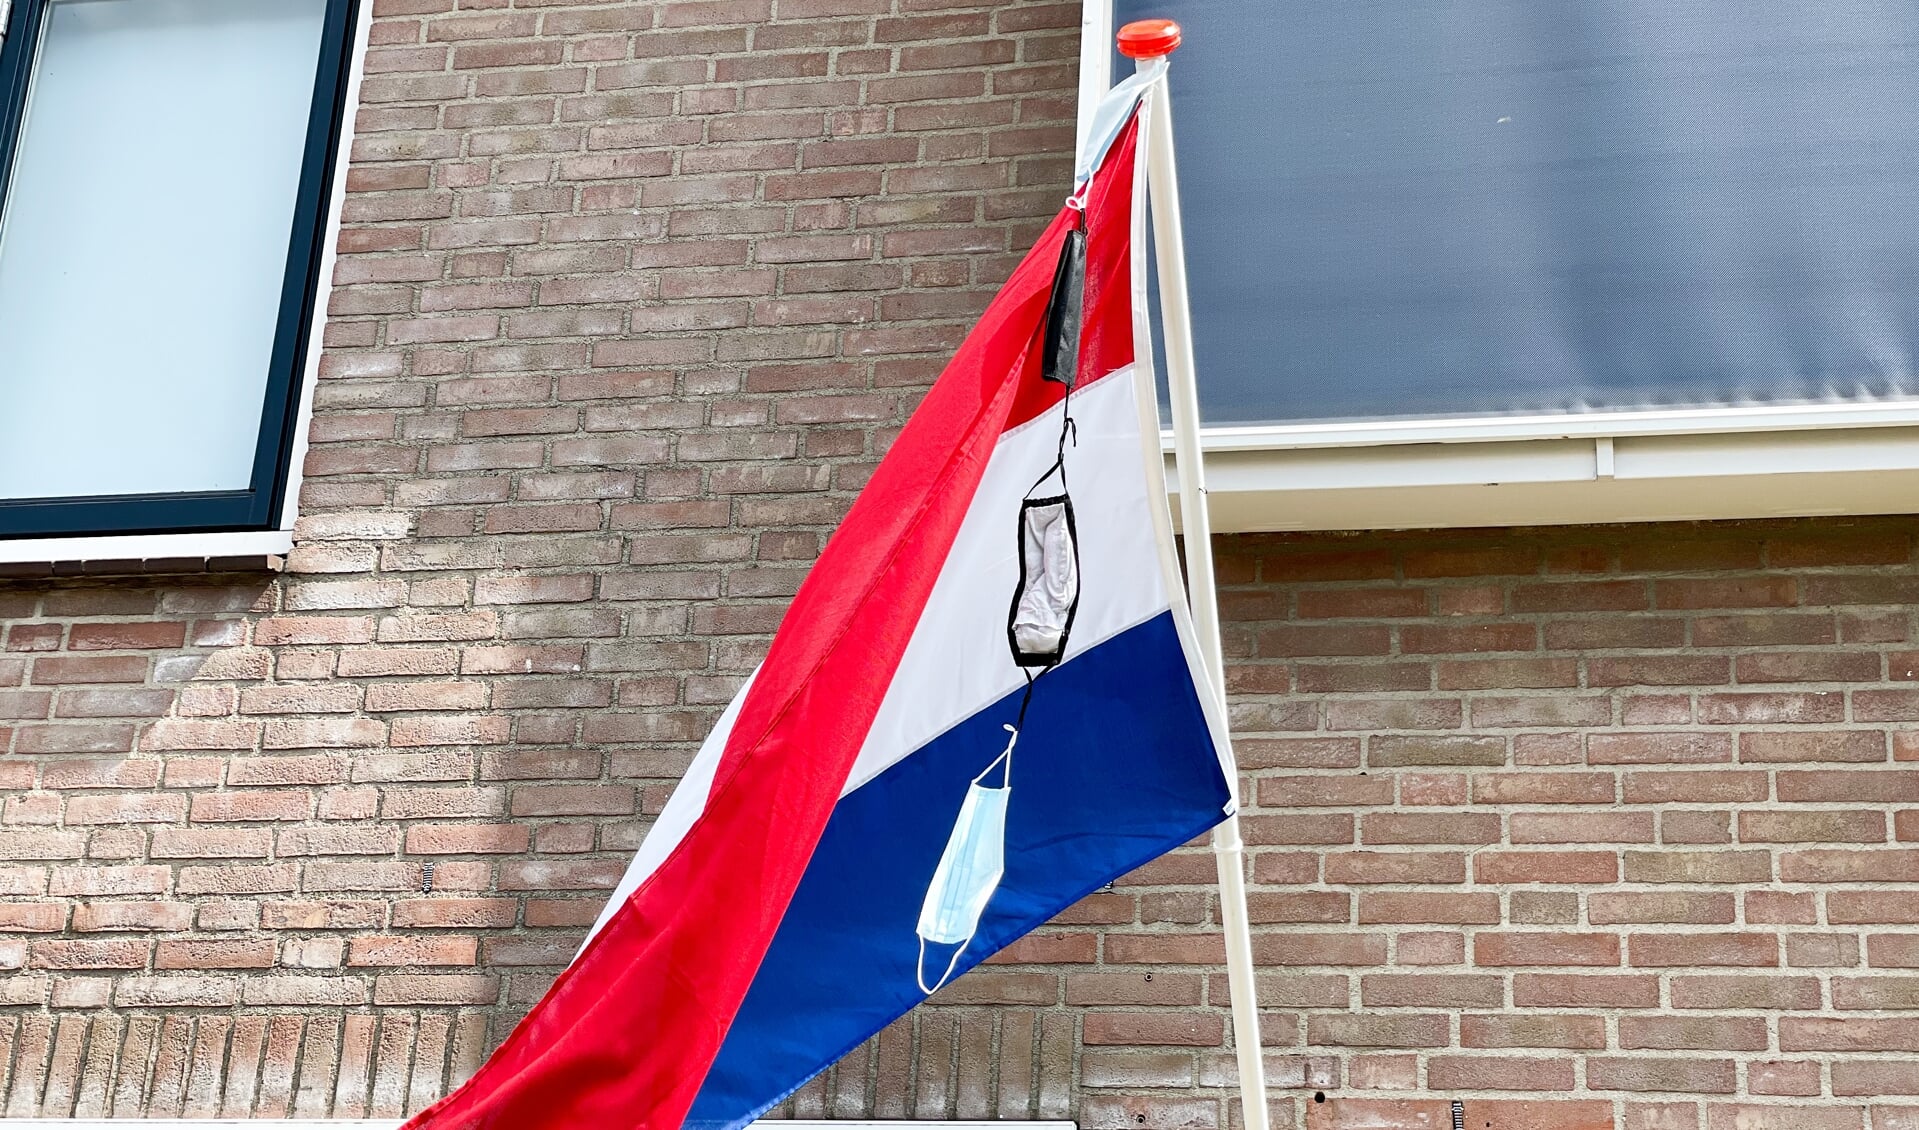 De vlag met mondkapjeswimpel wapperde sierlijk aan het huis in Nijkerkerveen